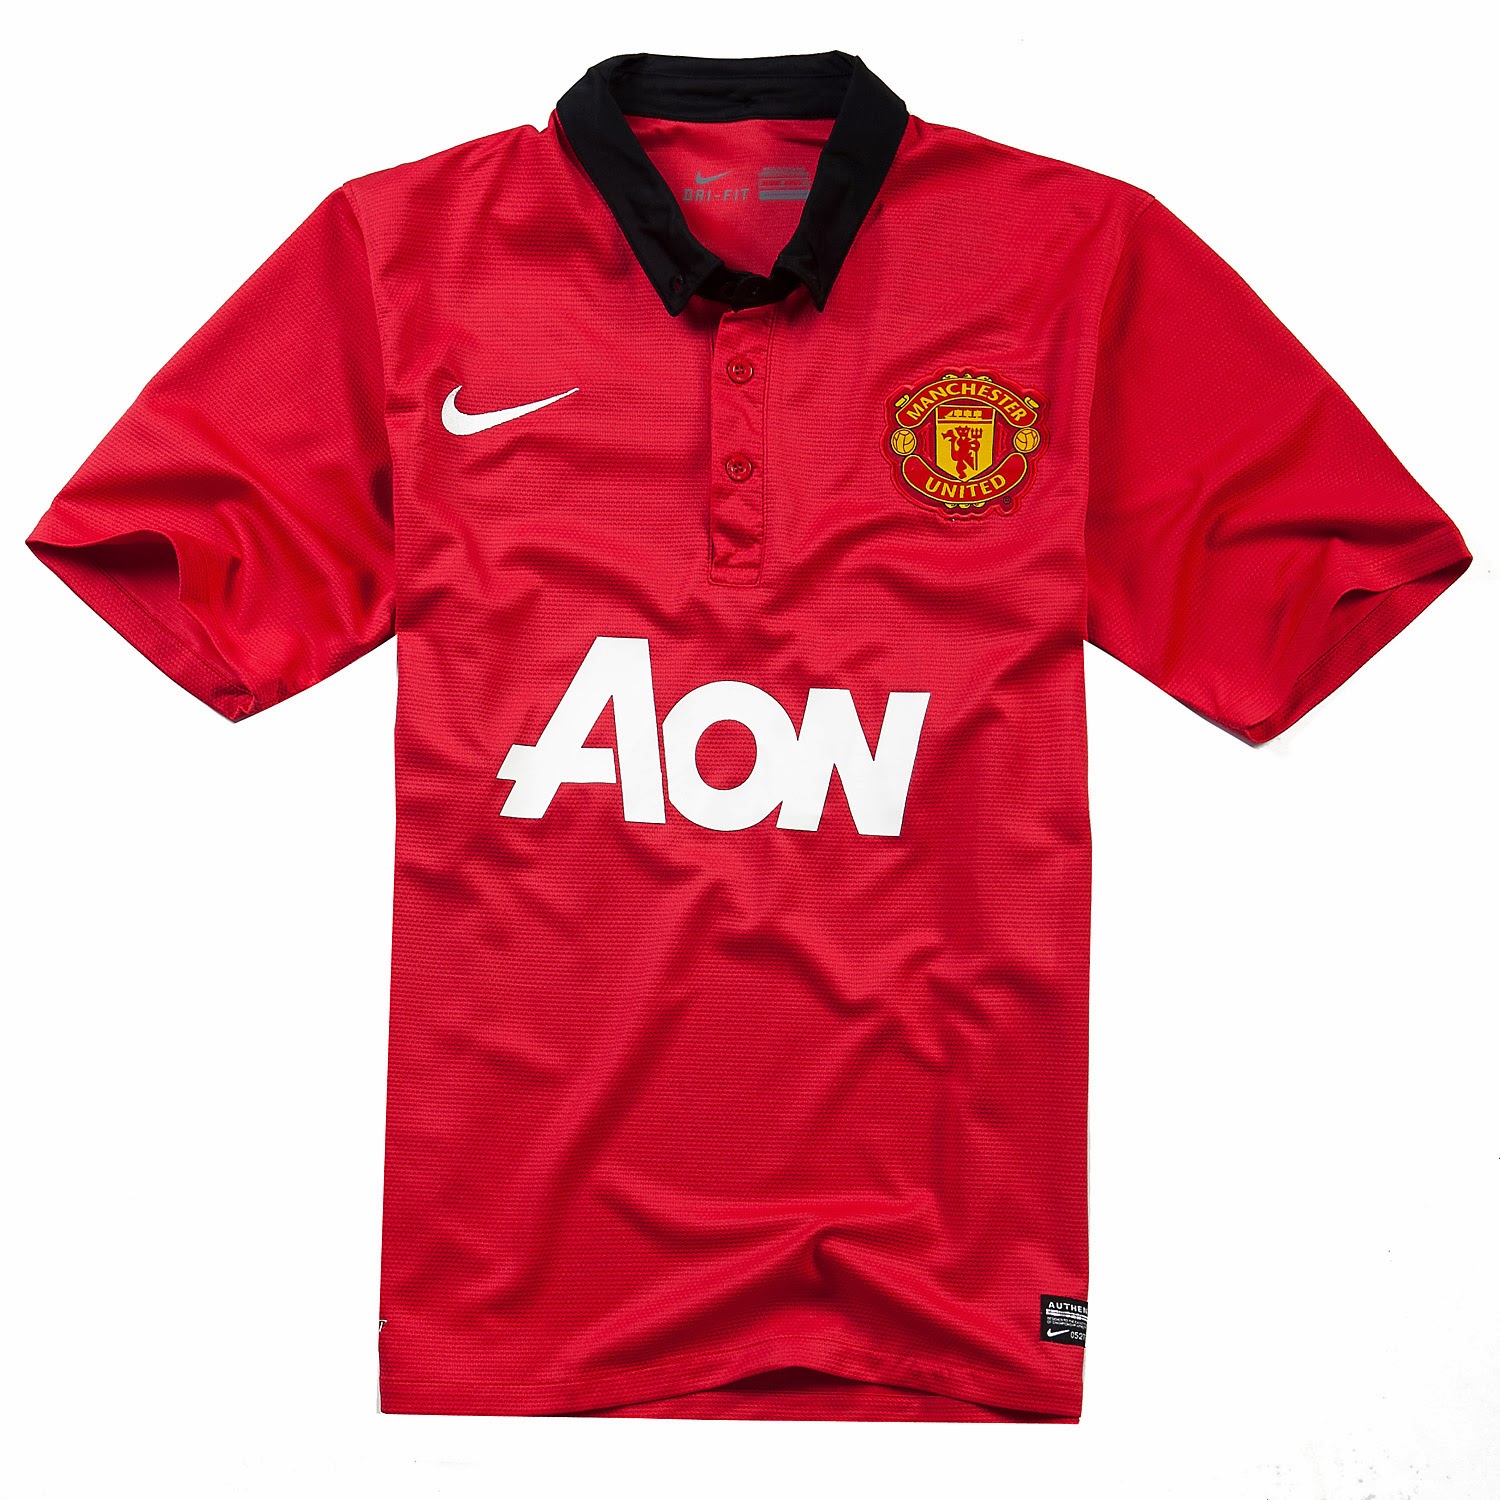 Equipaciones de futbol baratas 2015 online: nueva camisetas de futbol manchester united 2014 baratas